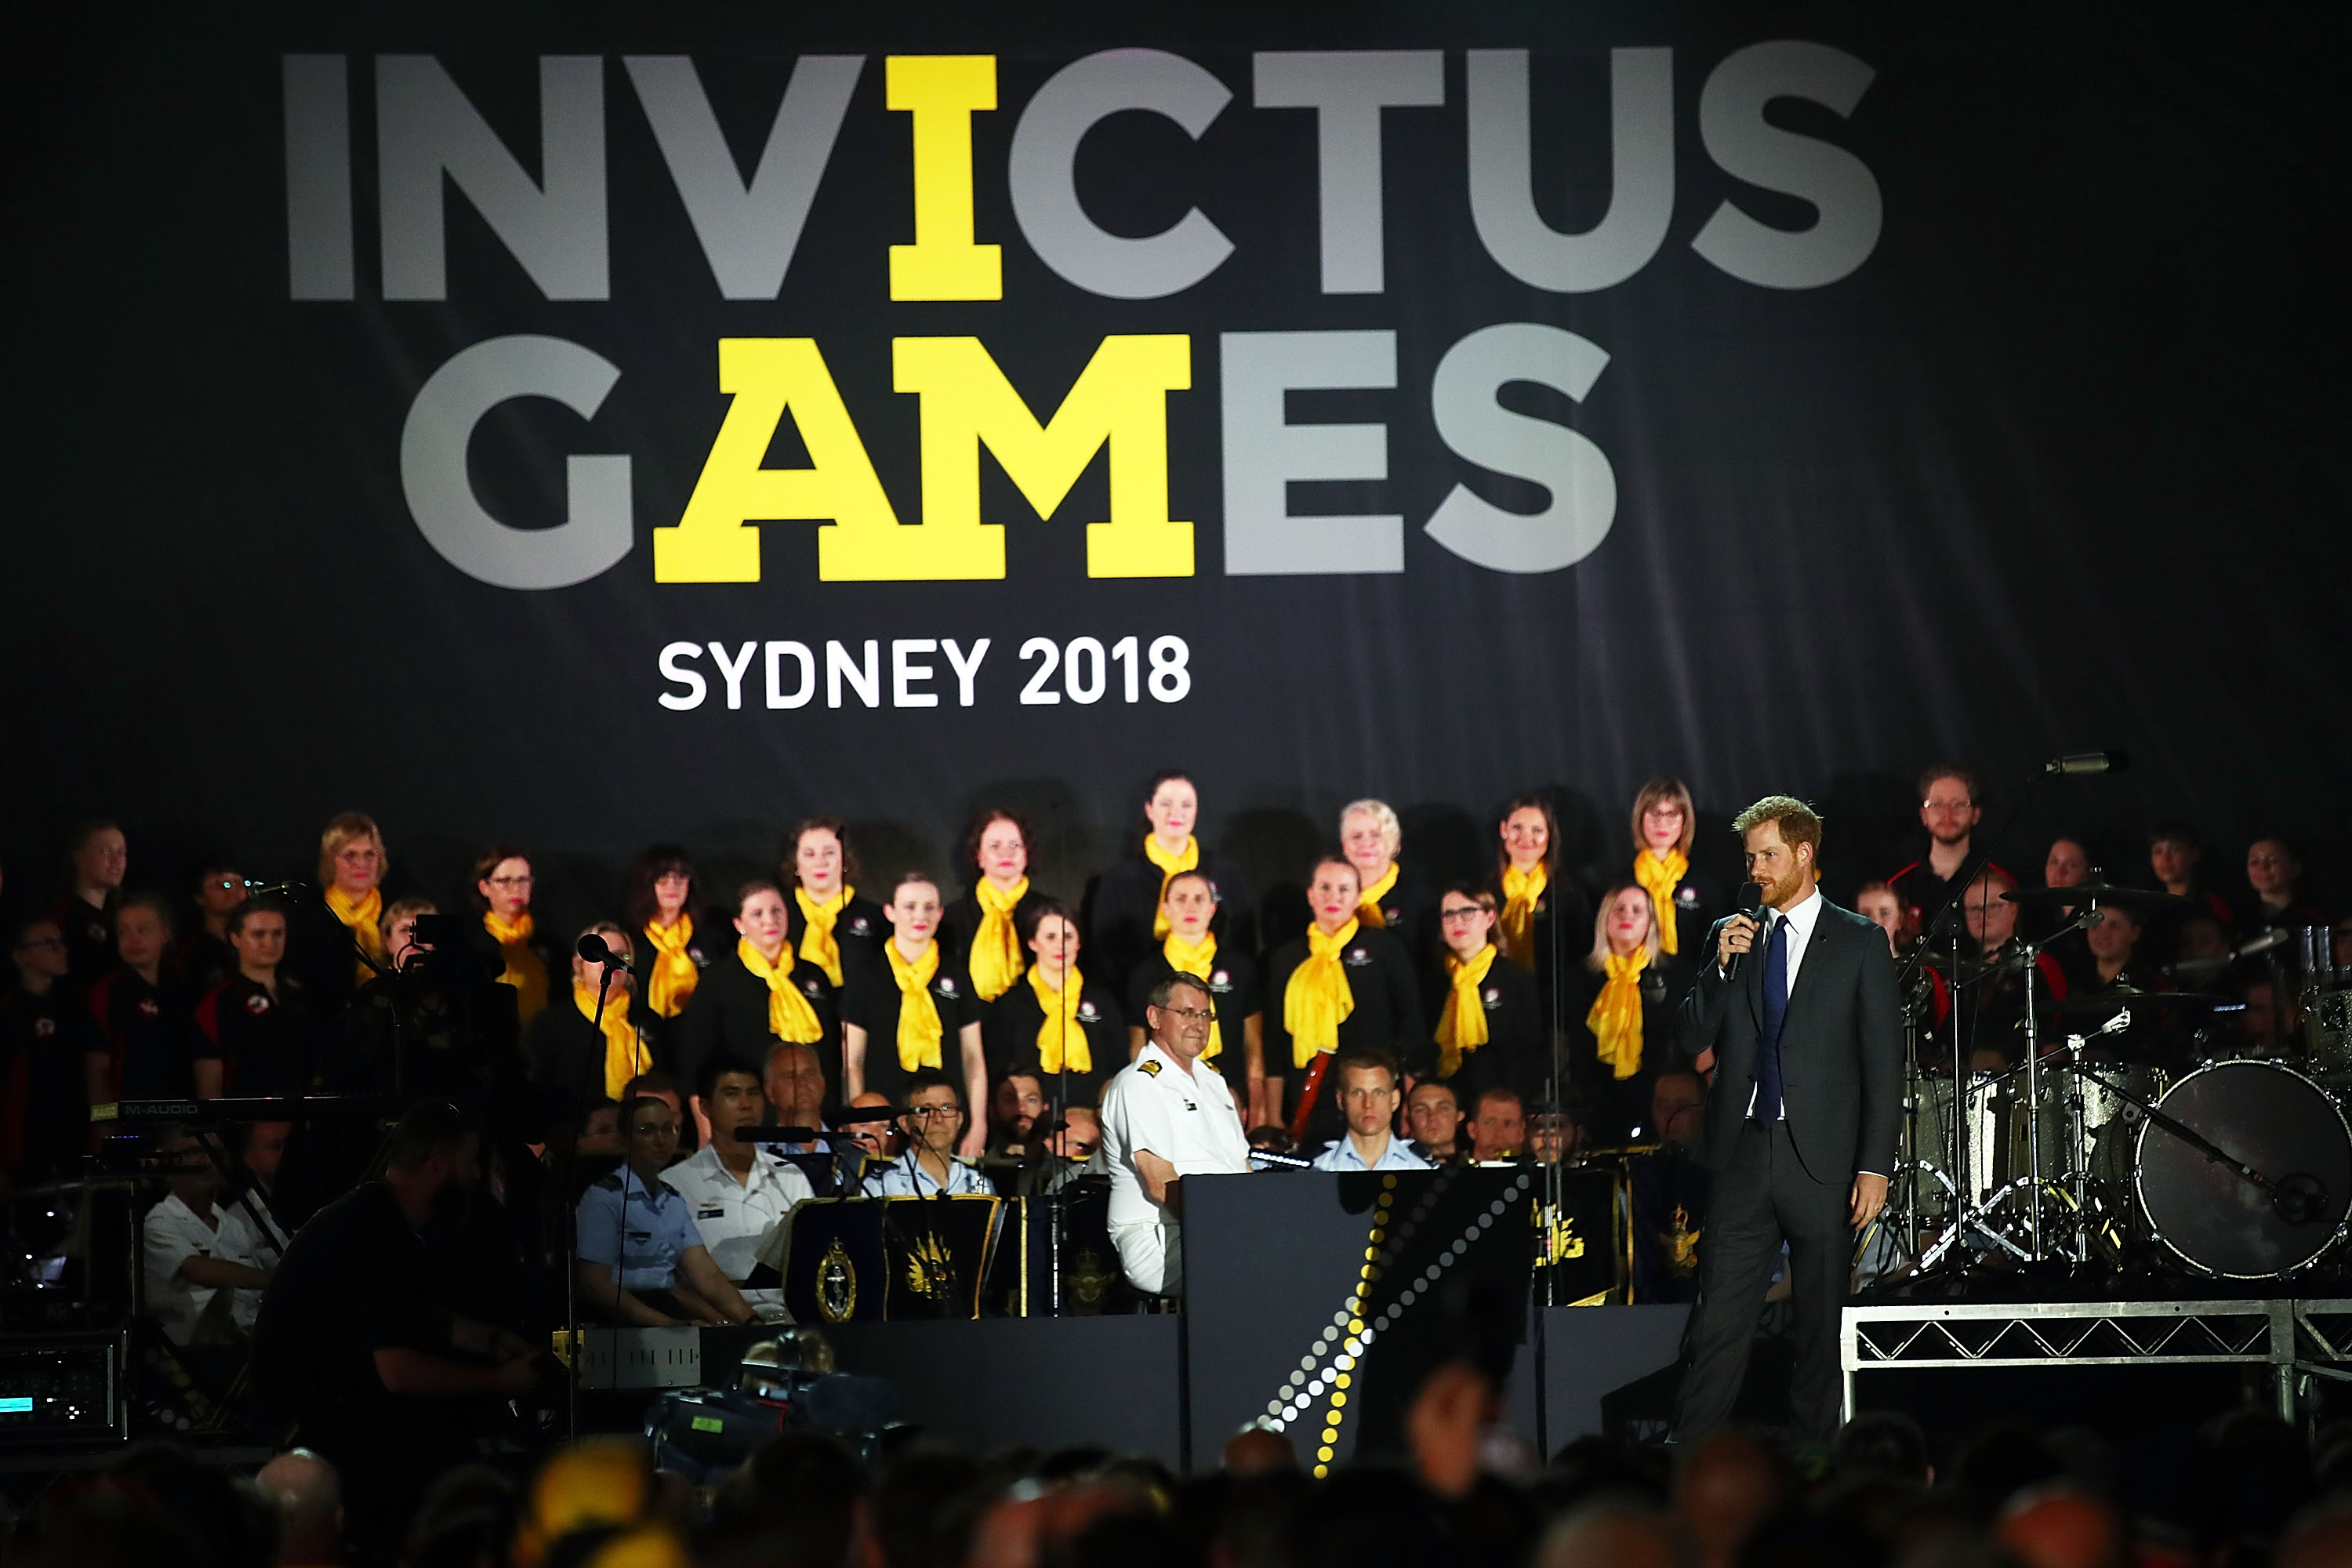 Le prince Harry s'exprime lors de la cérémonie d'ouverture des nvictus Games Sydney 2018 à l'Opéra de Sydney le 20 octobre 2018 à Sydney, en Australie | Source : Getty Images